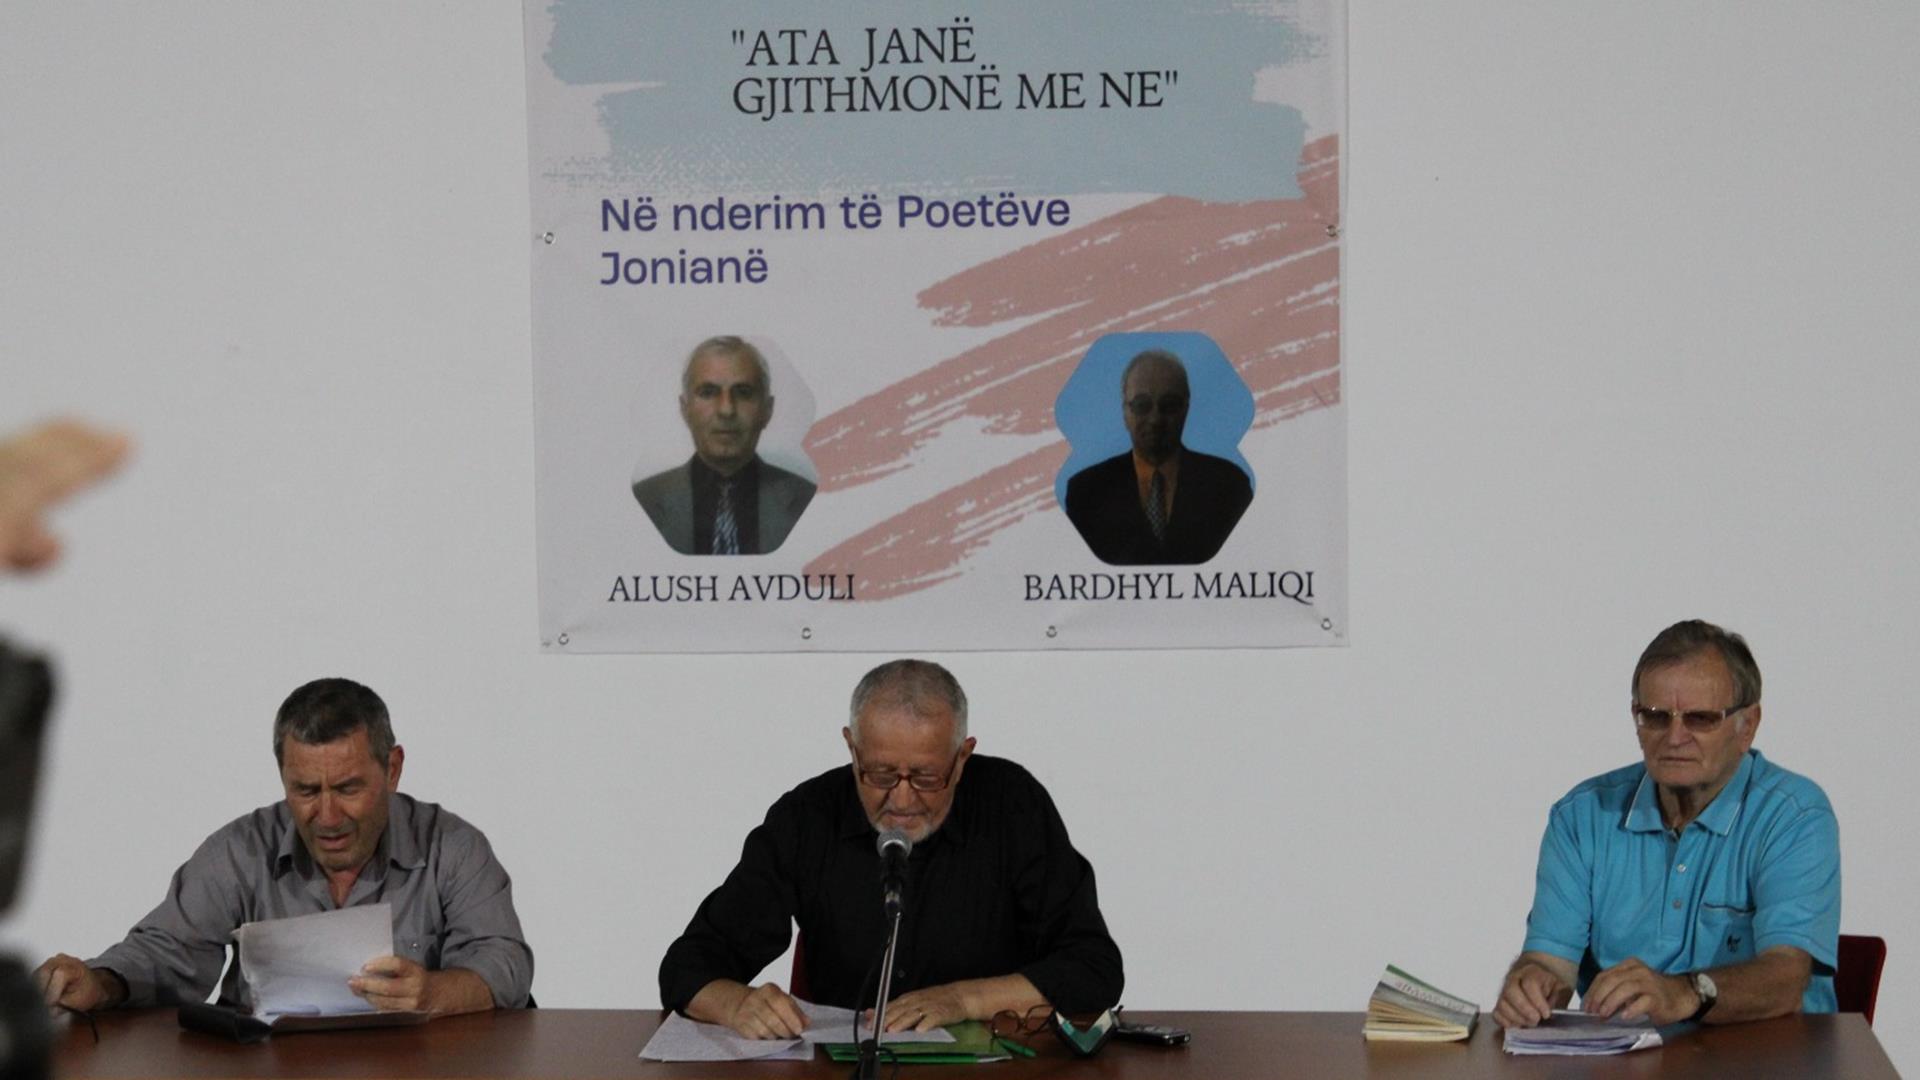 Ata janë gjithmonë me ne! Aktivitet në nderim të poetëve Alush Avduli &amp; Bardhyl Maliqi &#8211; VIDEO